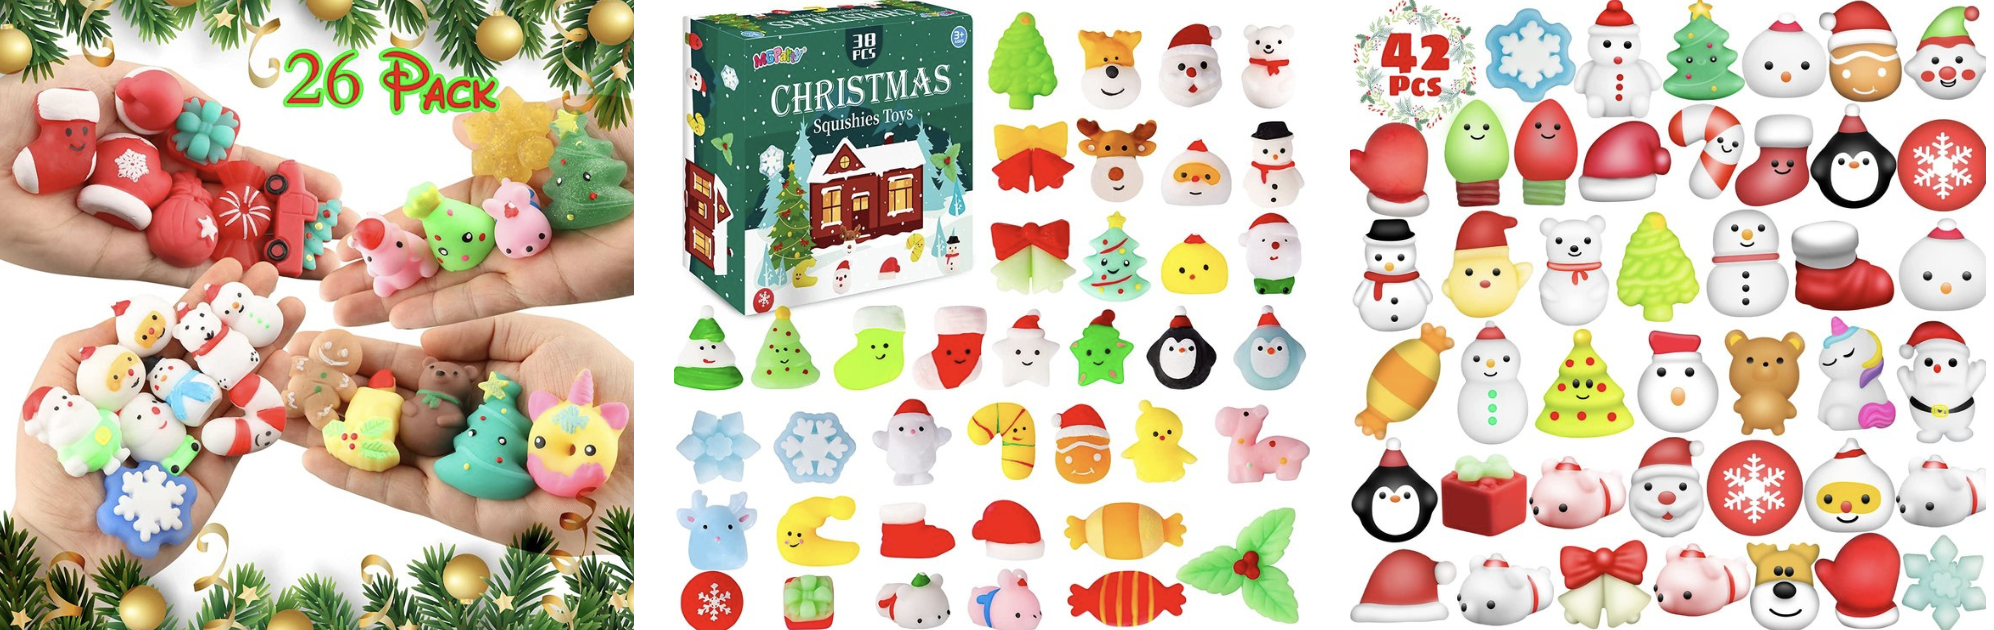 Cute Christmas Squishy Toys